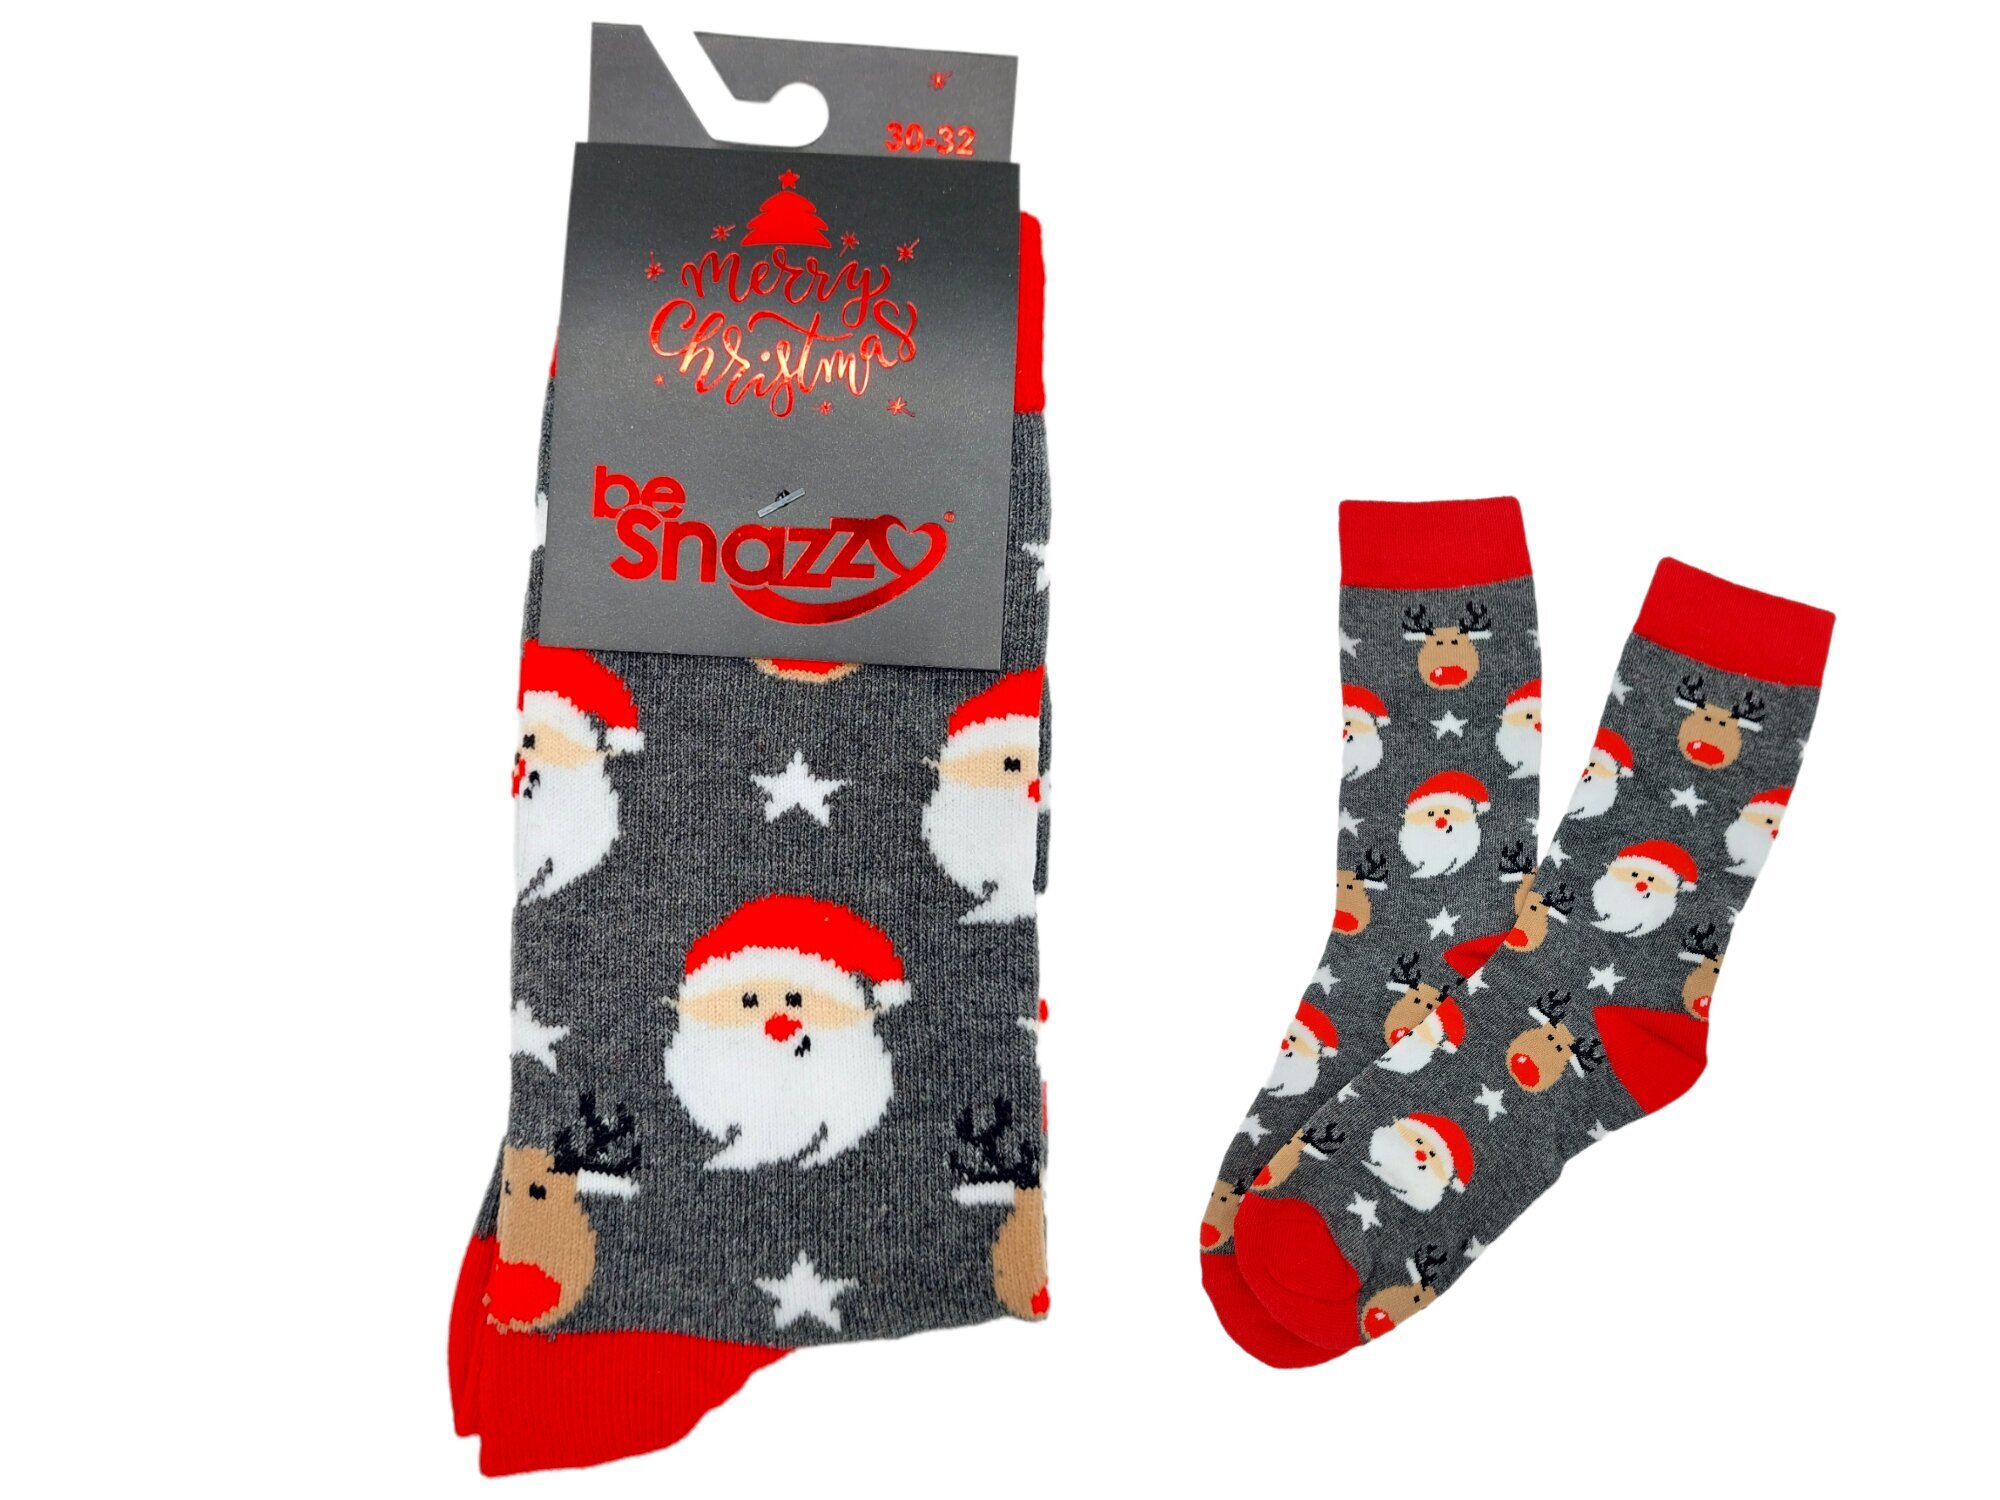 Kalėdinės kojinės visai šeimai be Snazzy SKCH-01 Merry Christmas kaina |  pigu.lt